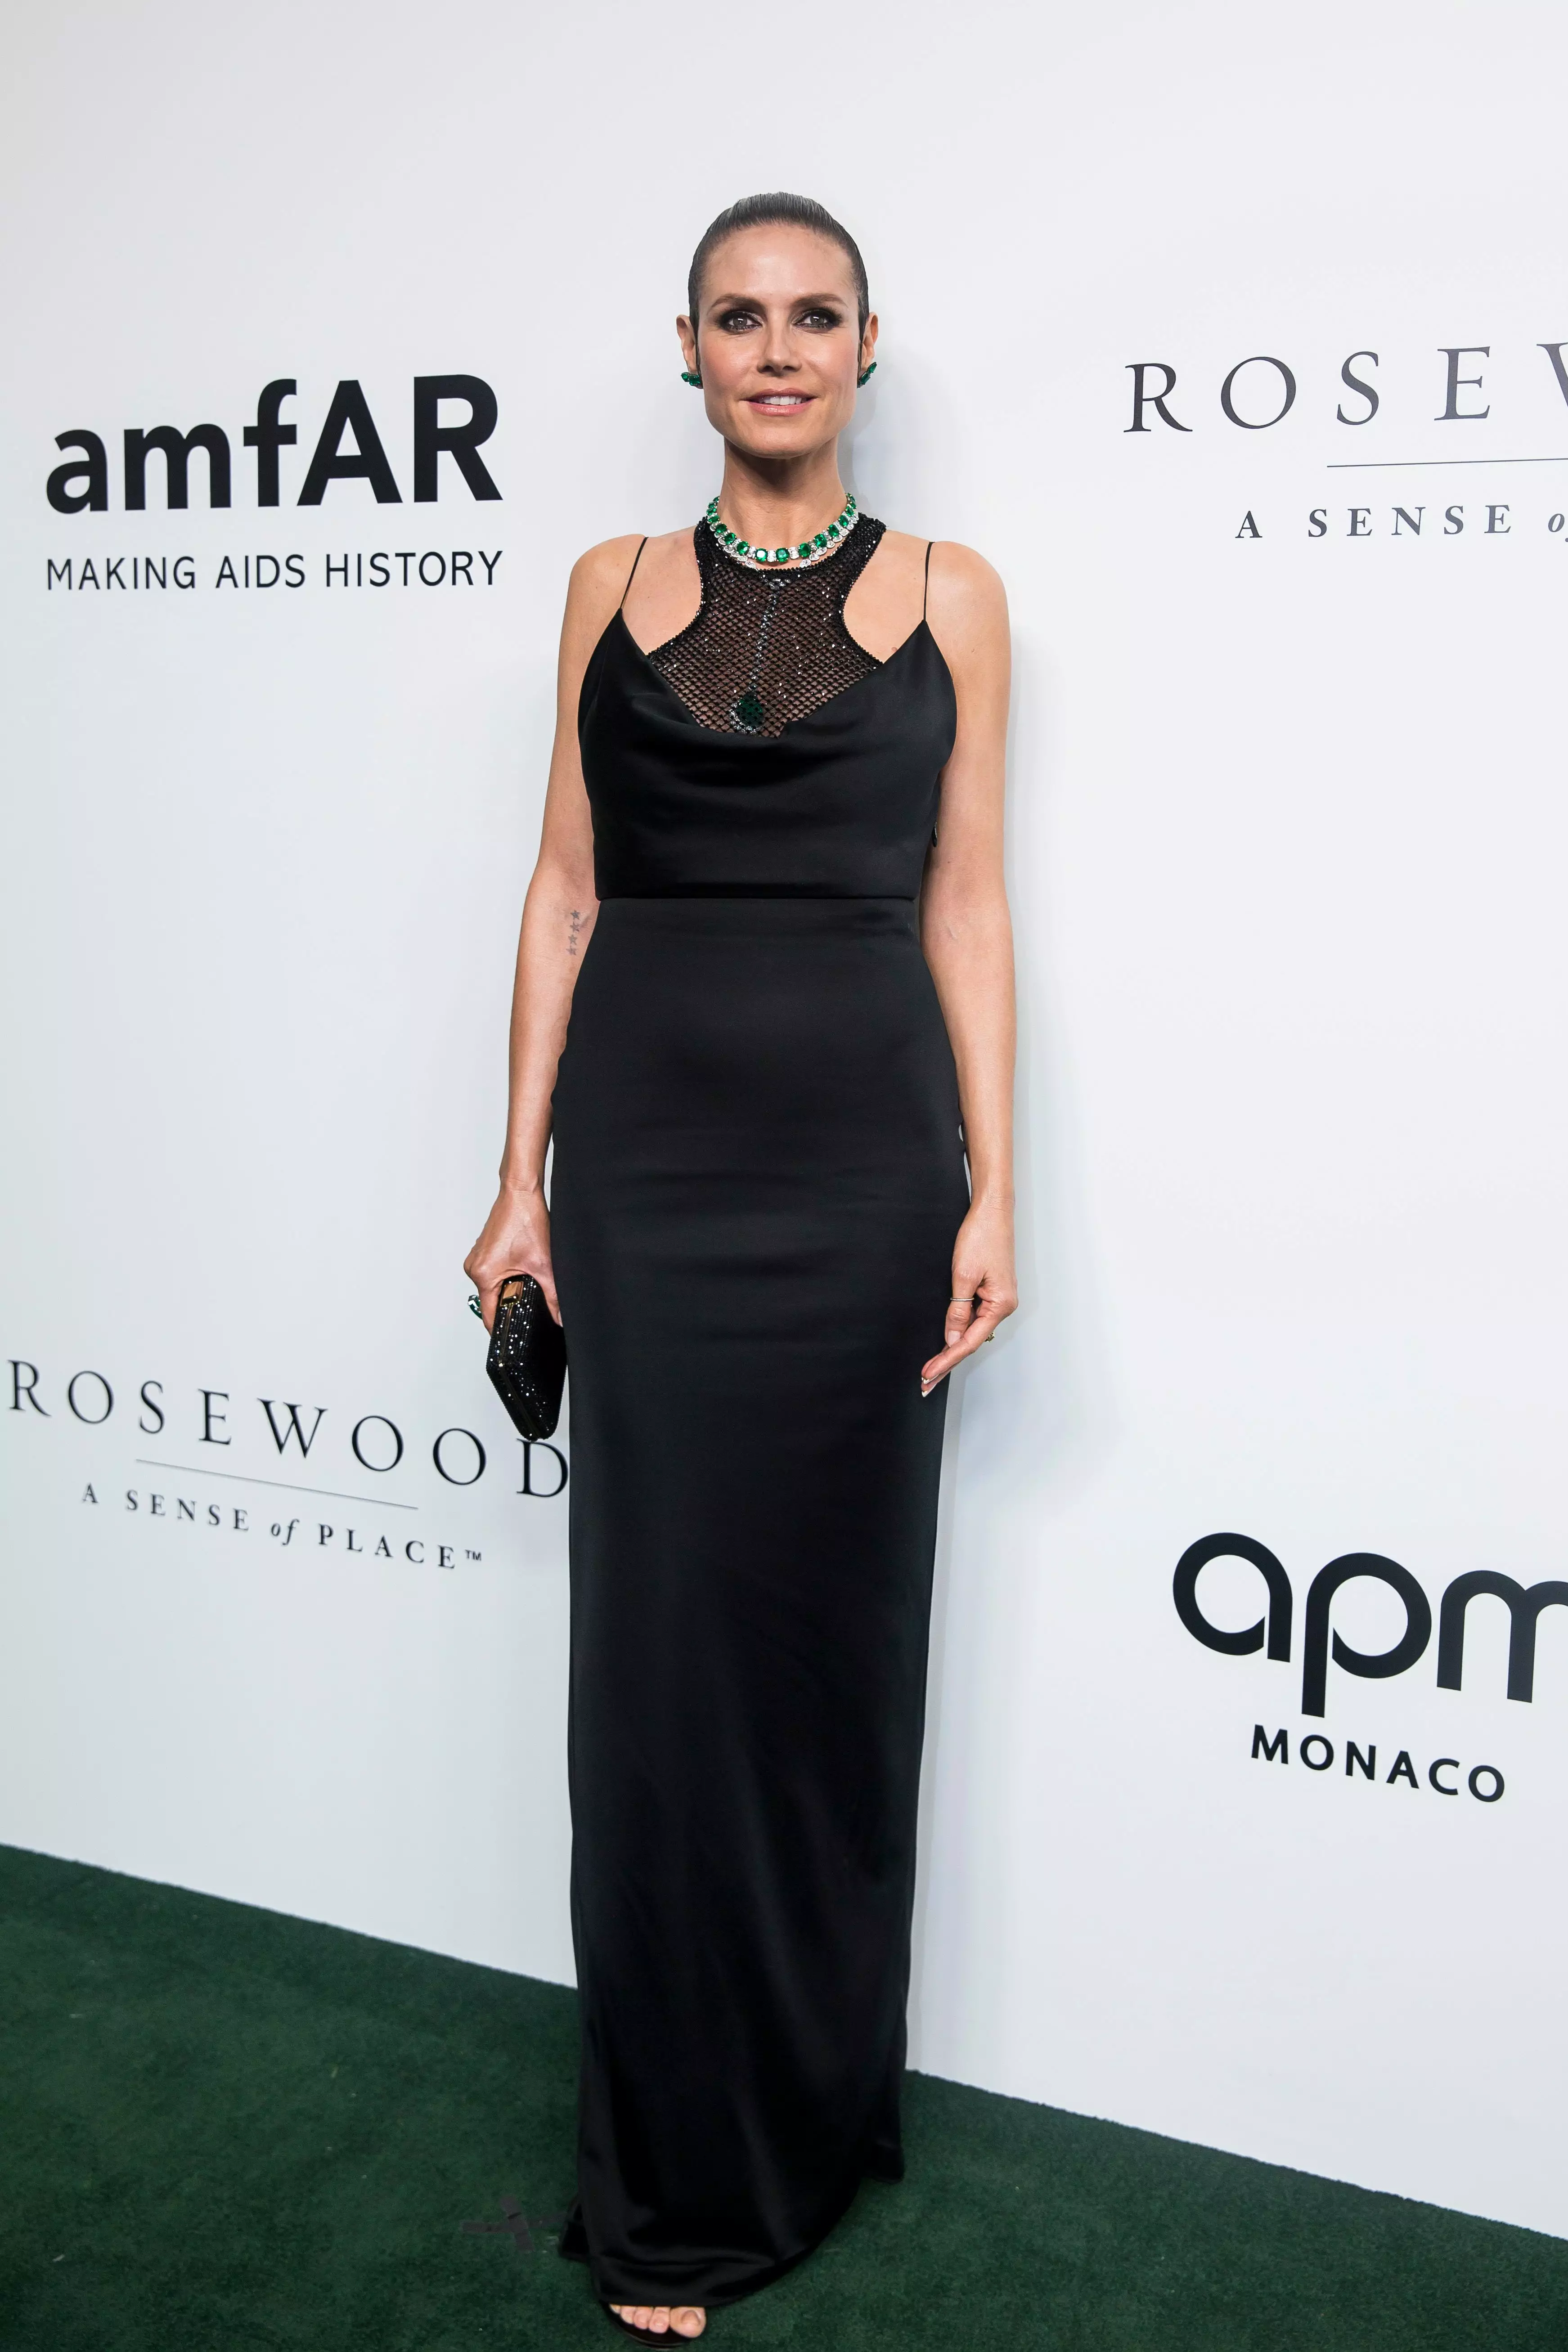 Модель Хайди Клум в черном облегающем платье с сеткой на груди